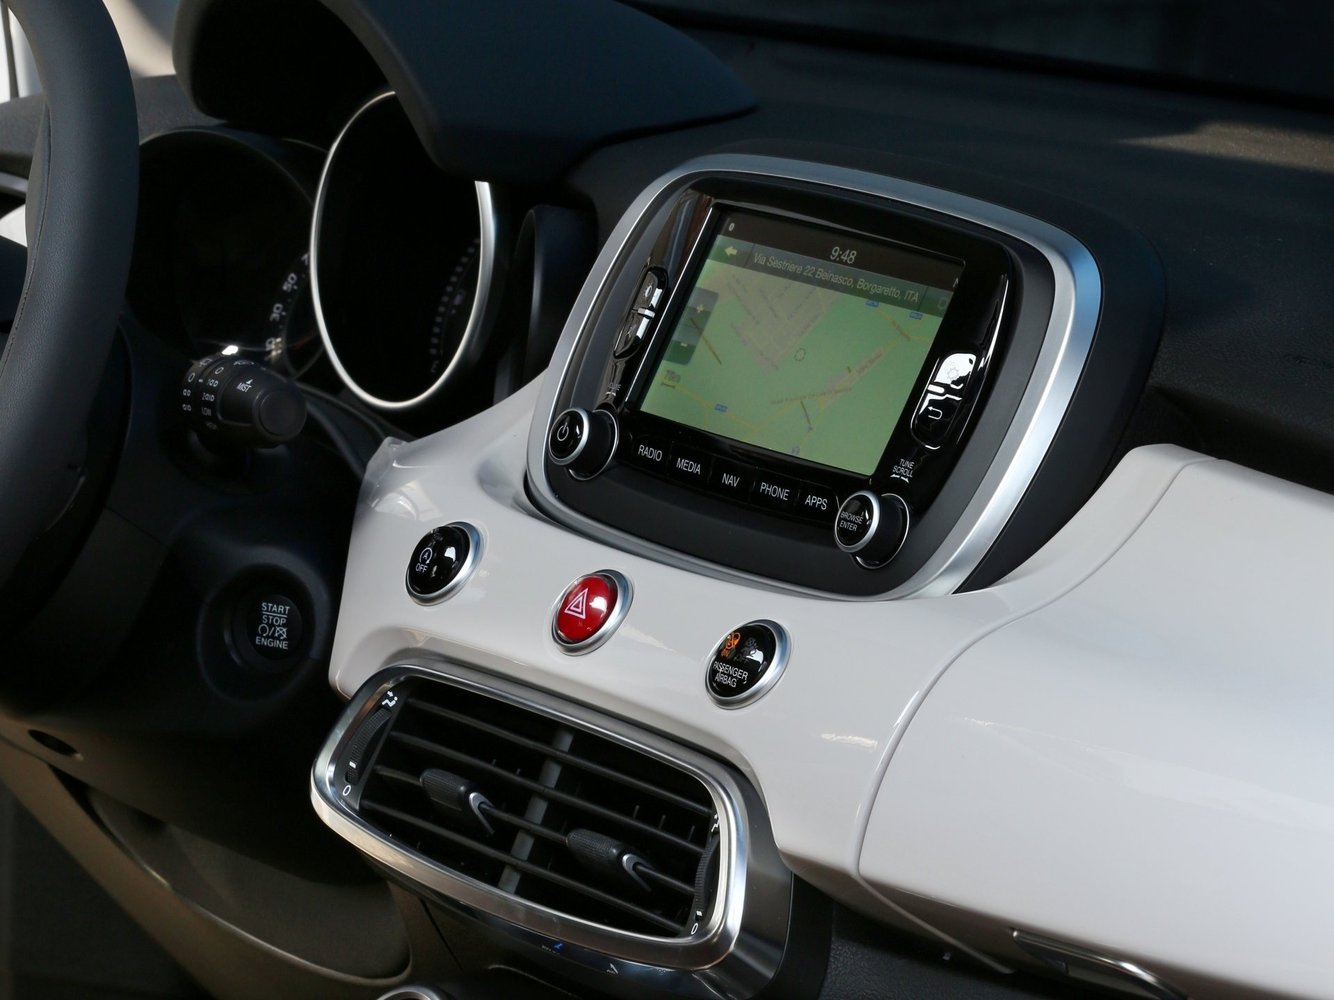 кроссовер Fiat 500X 2014 - 2016г выпуска модификация 1.4 AMT (140 л.с.)